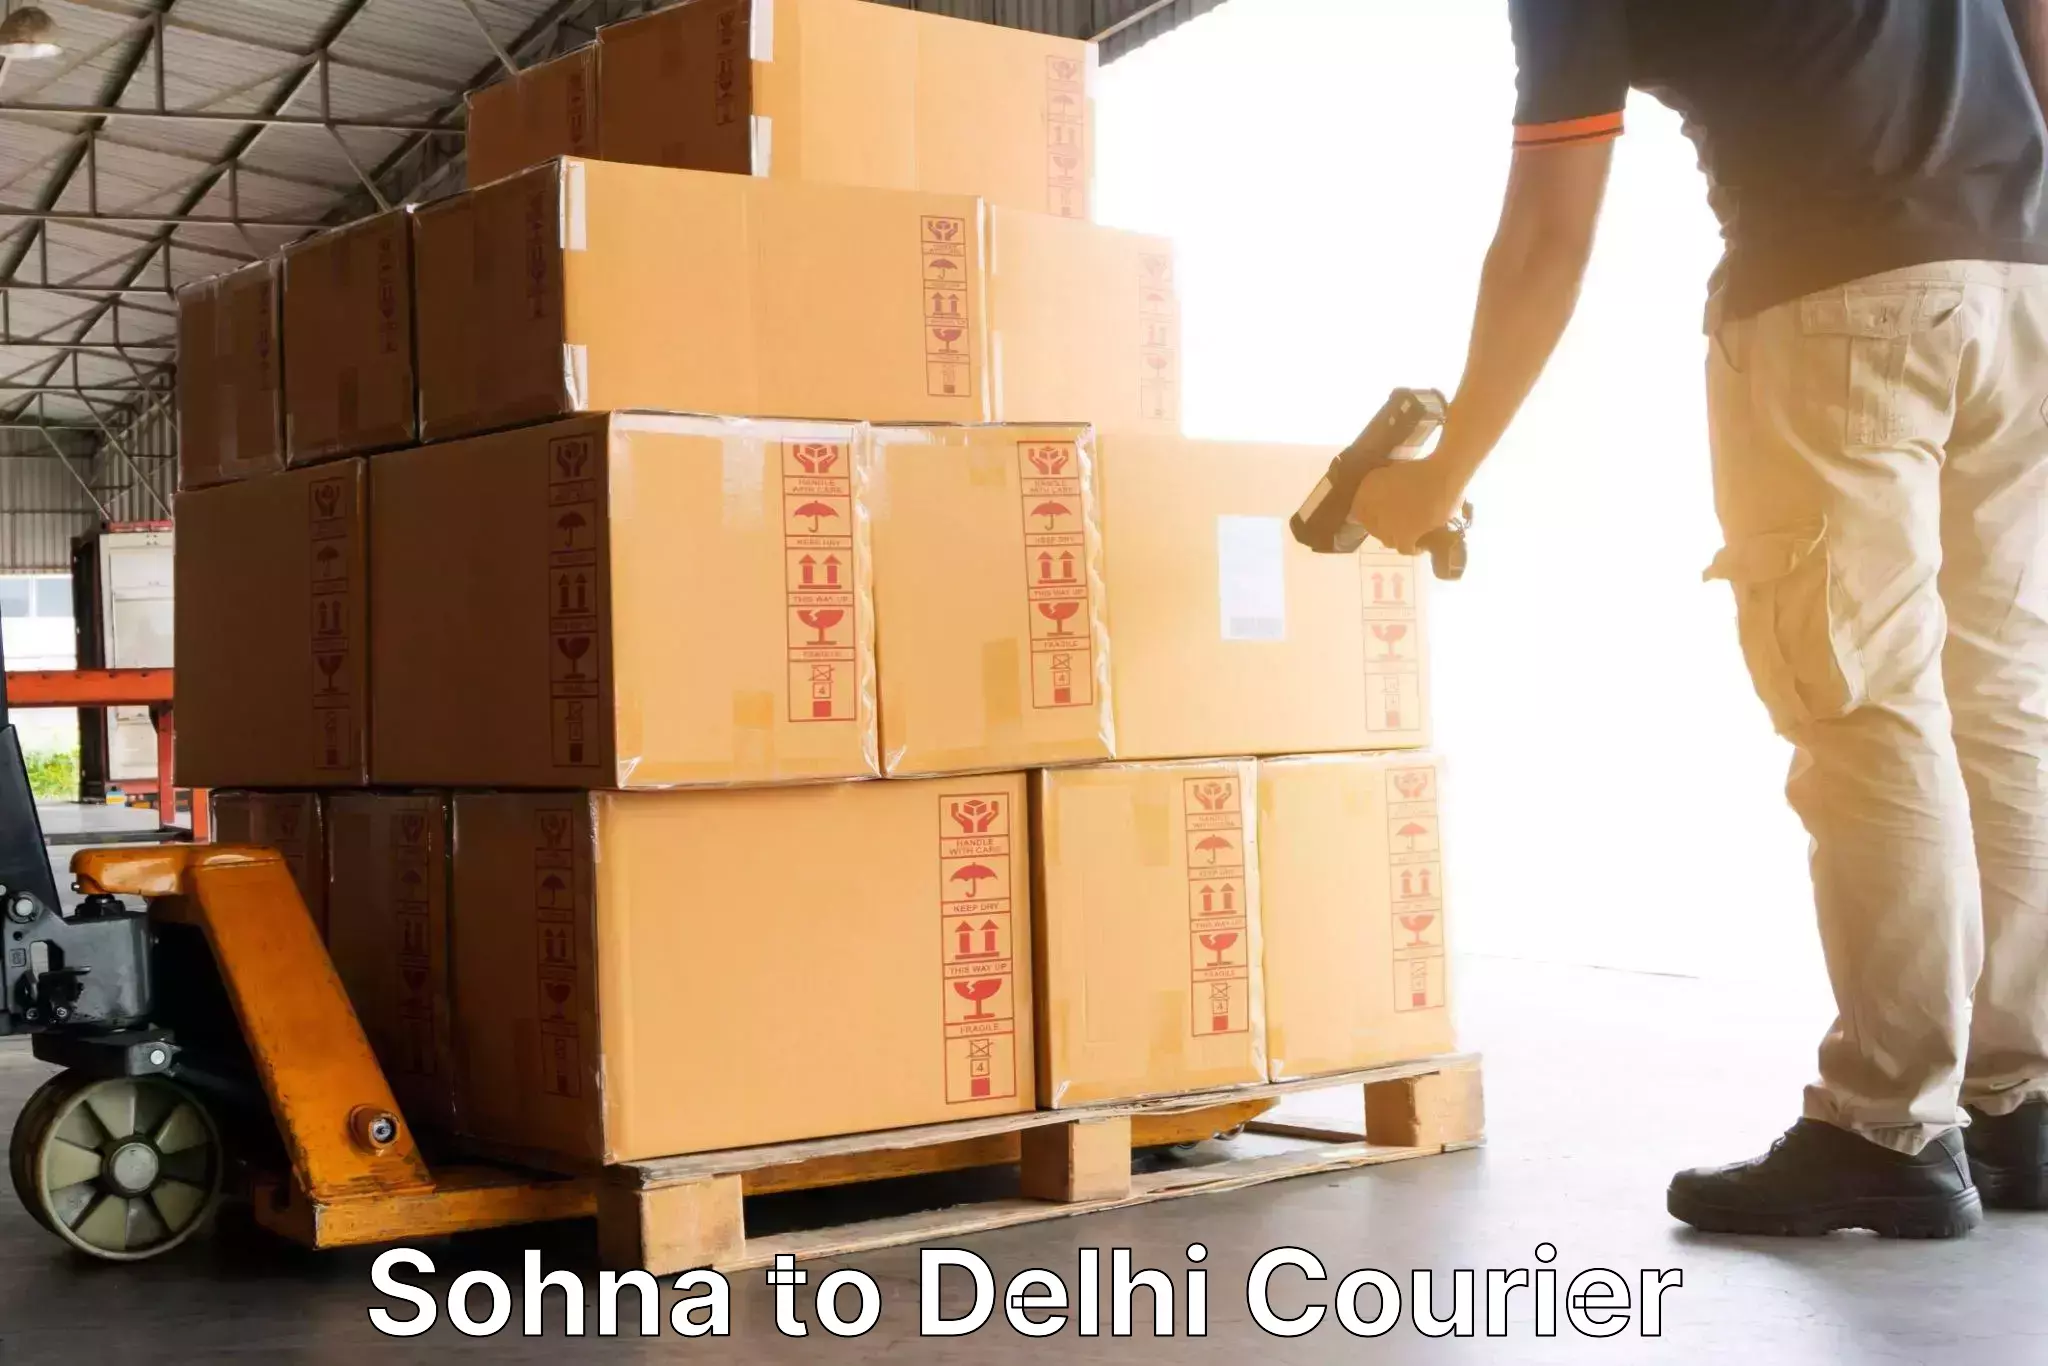 24/7 courier service Sohna to Delhi